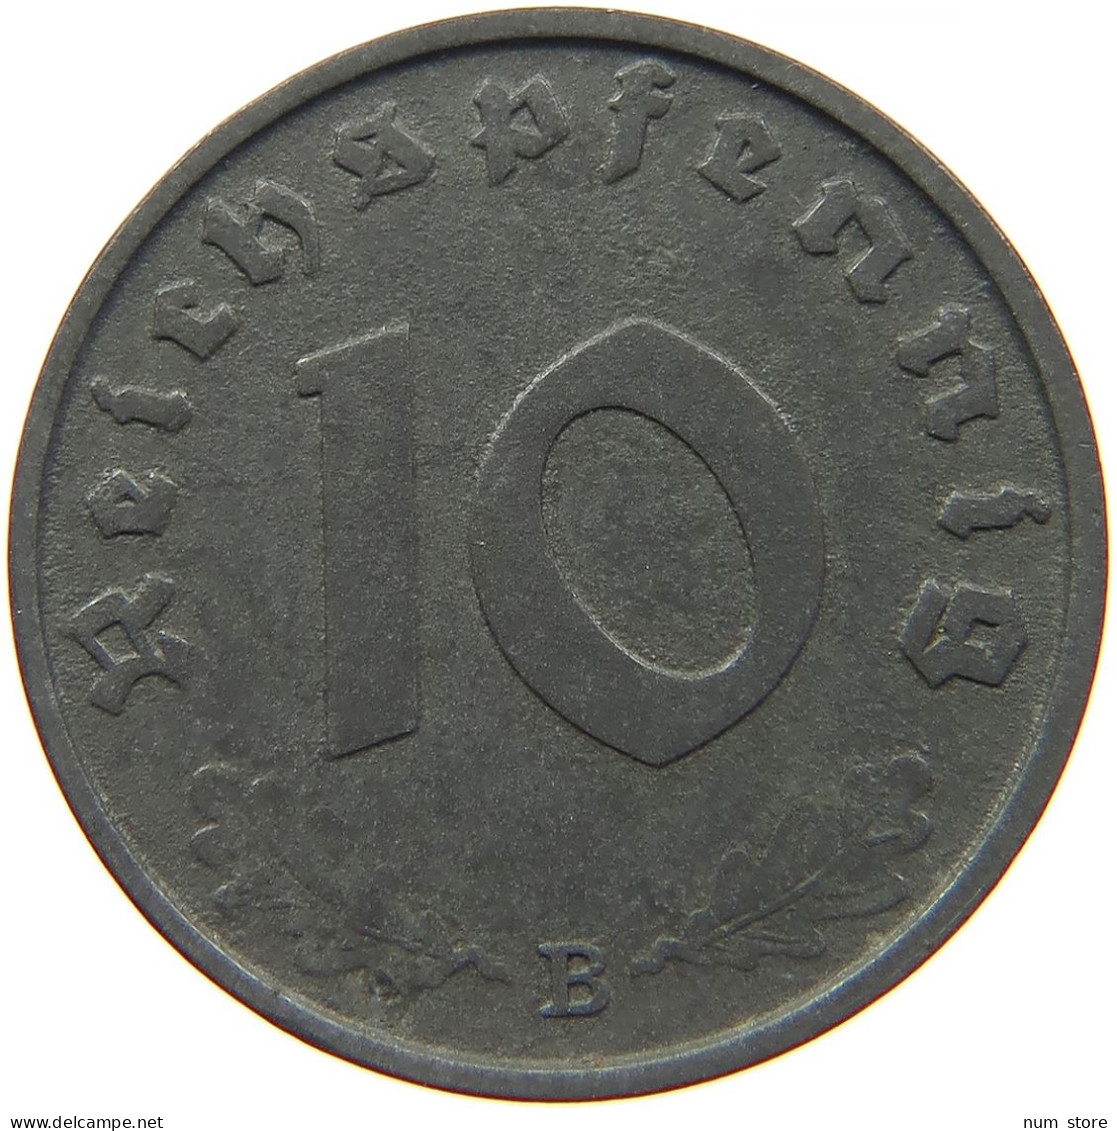 GERMANY 10 REICHSPFENNIG 1943 B #s095 0061 - 10 Reichspfennig